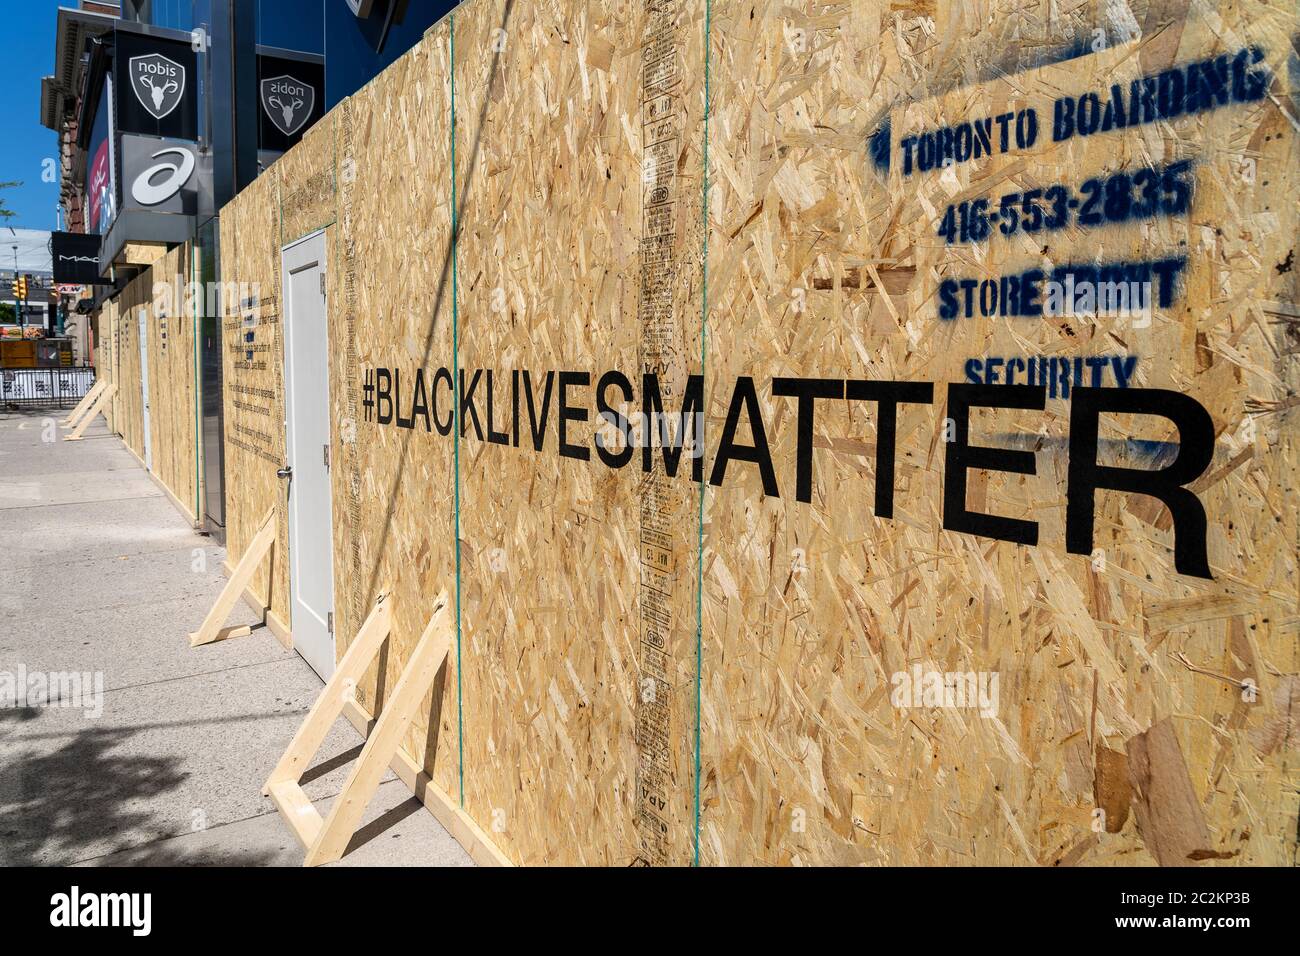 Se ha subido al escaparate del centro de Toronto mostrando vidas negras mensaje escrito en el frente en apoyo del movimiento social contra la injusticia racial. Foto de stock